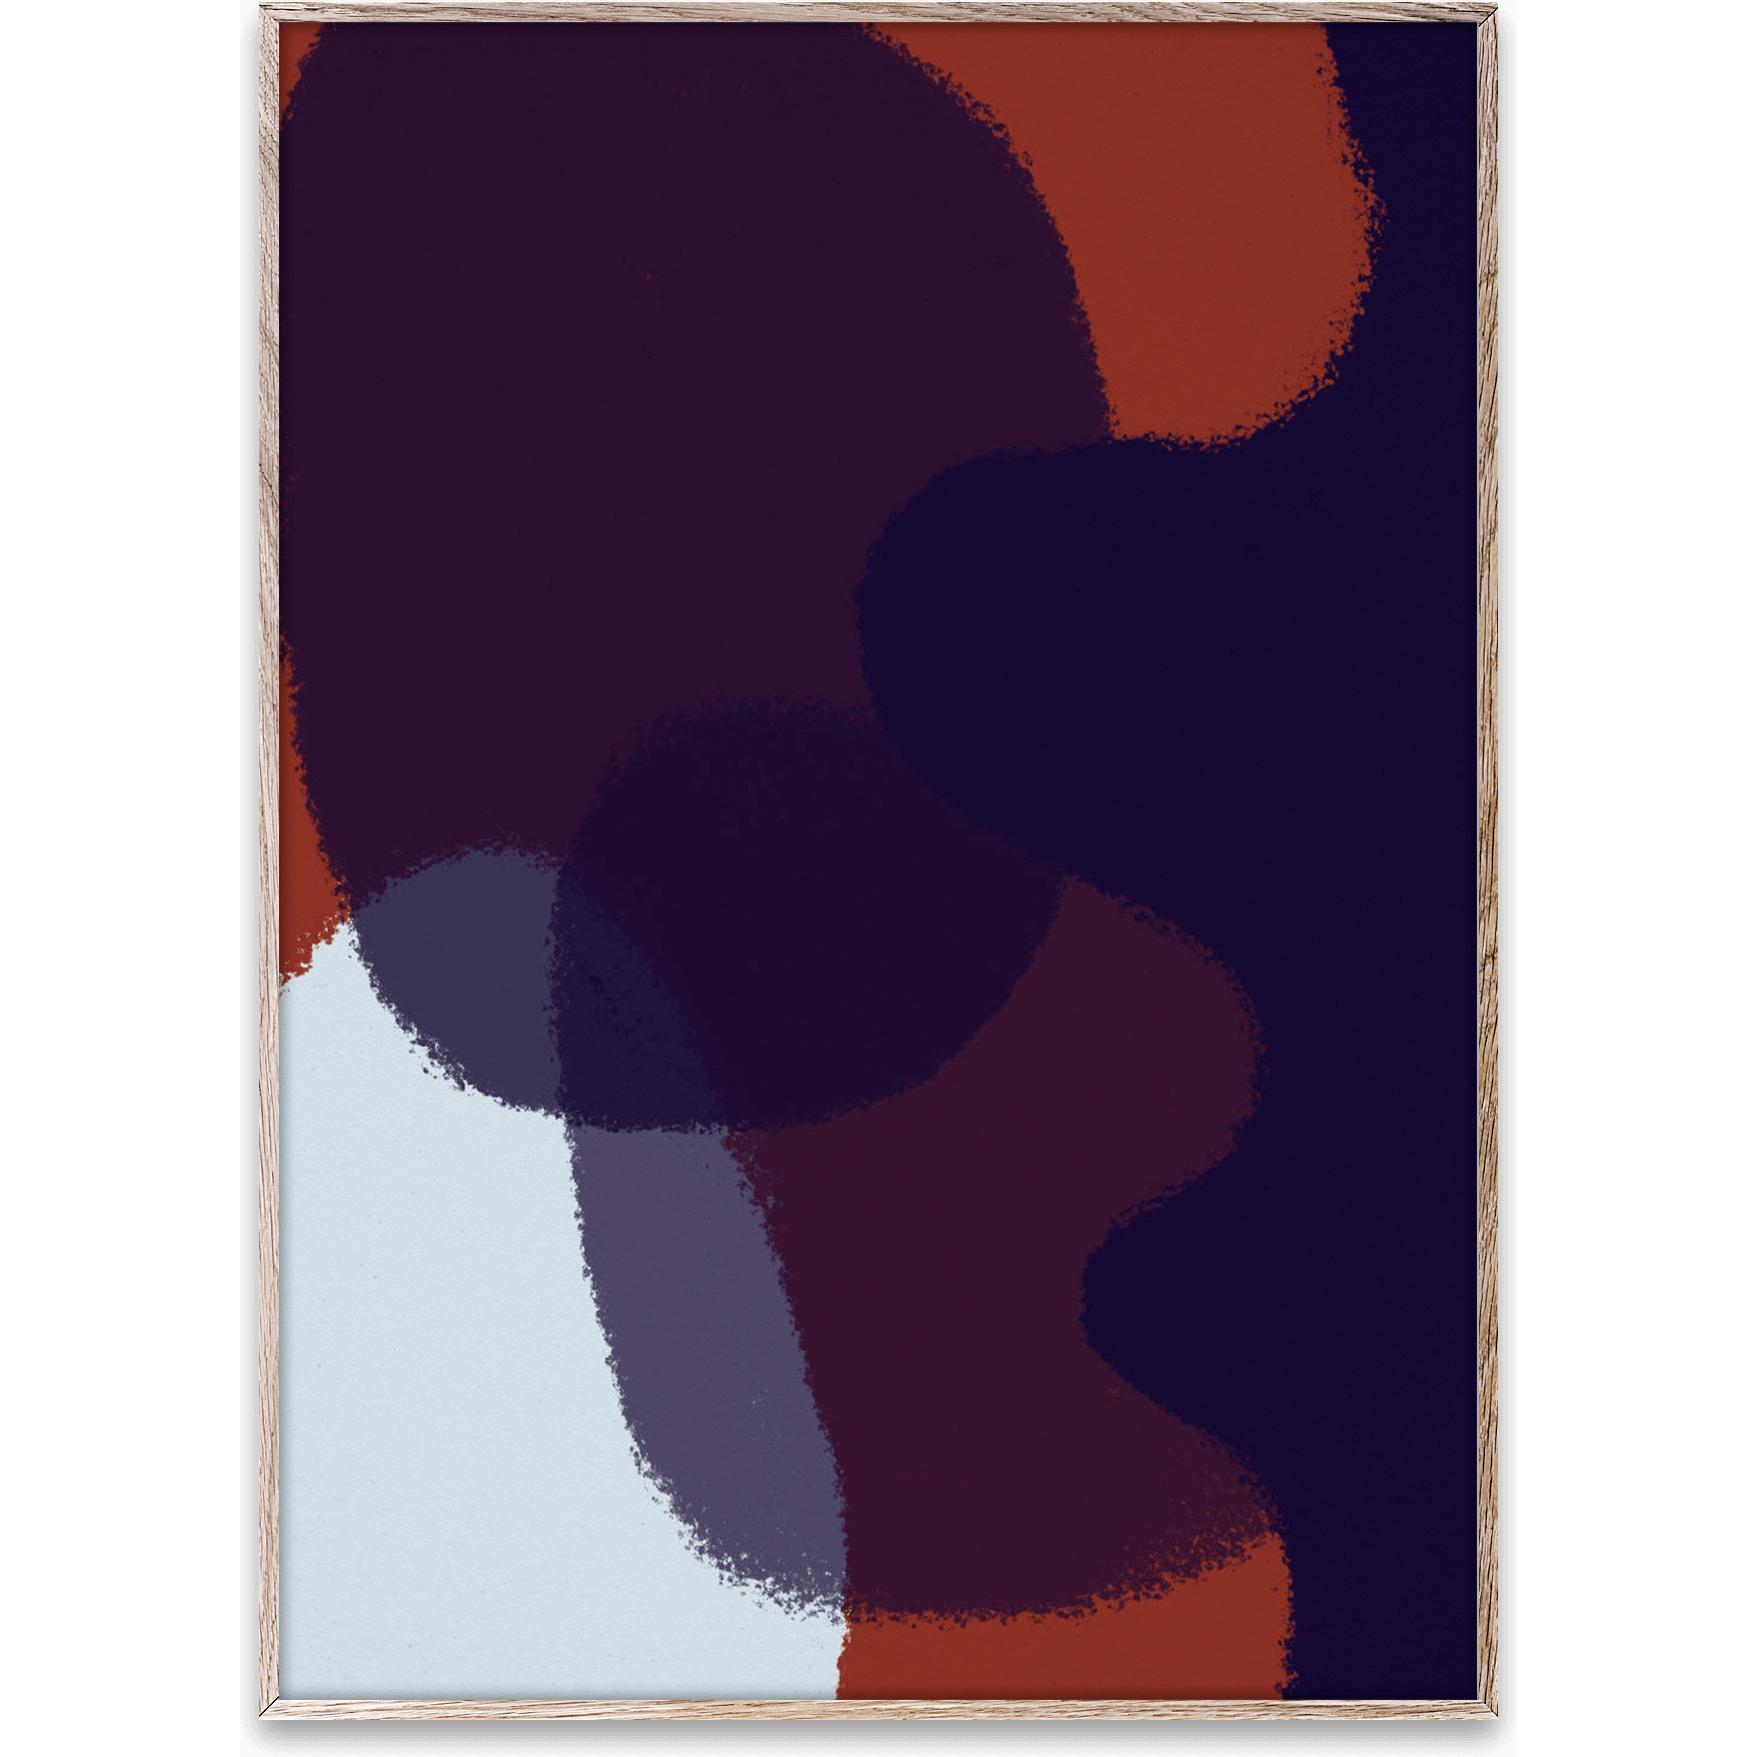 Paper Collective Musteen vilja 03 Juliste, 50x70 cm